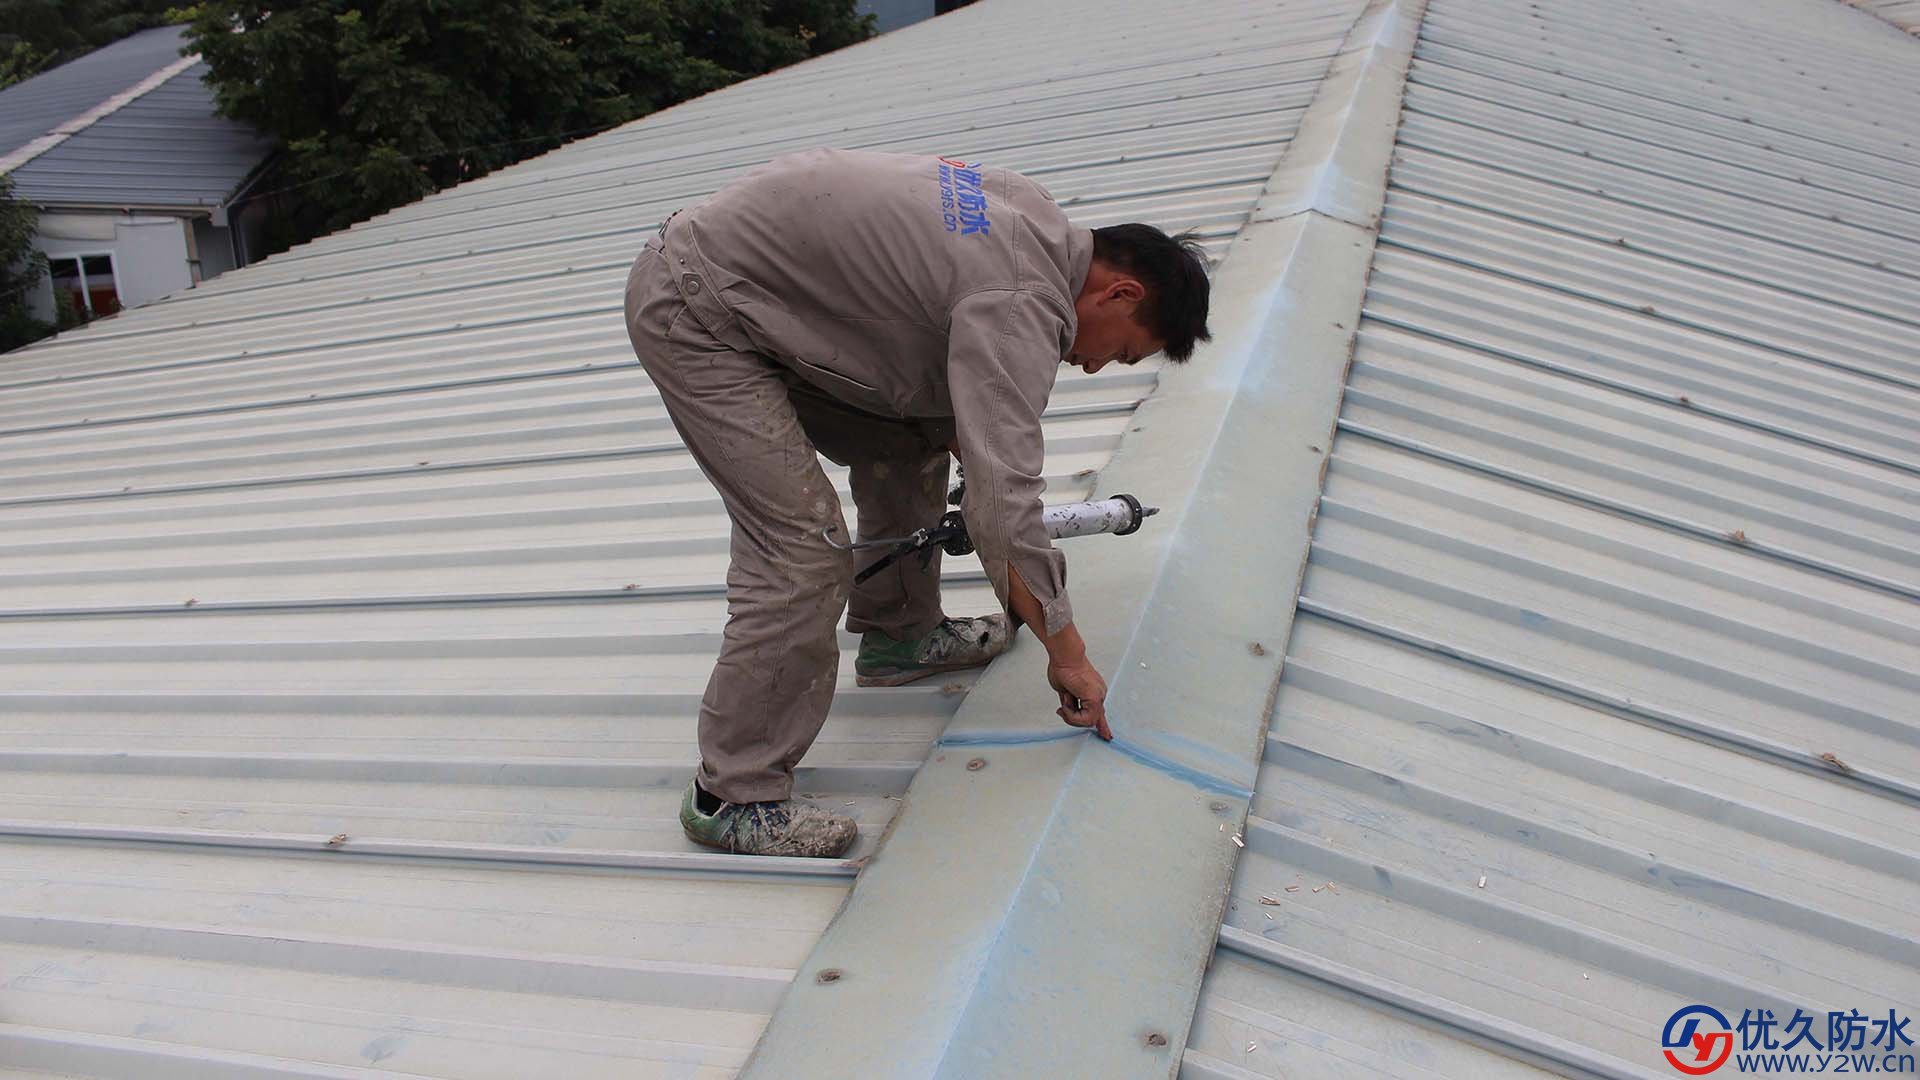 屋顶彩钢瓦防水补漏案例